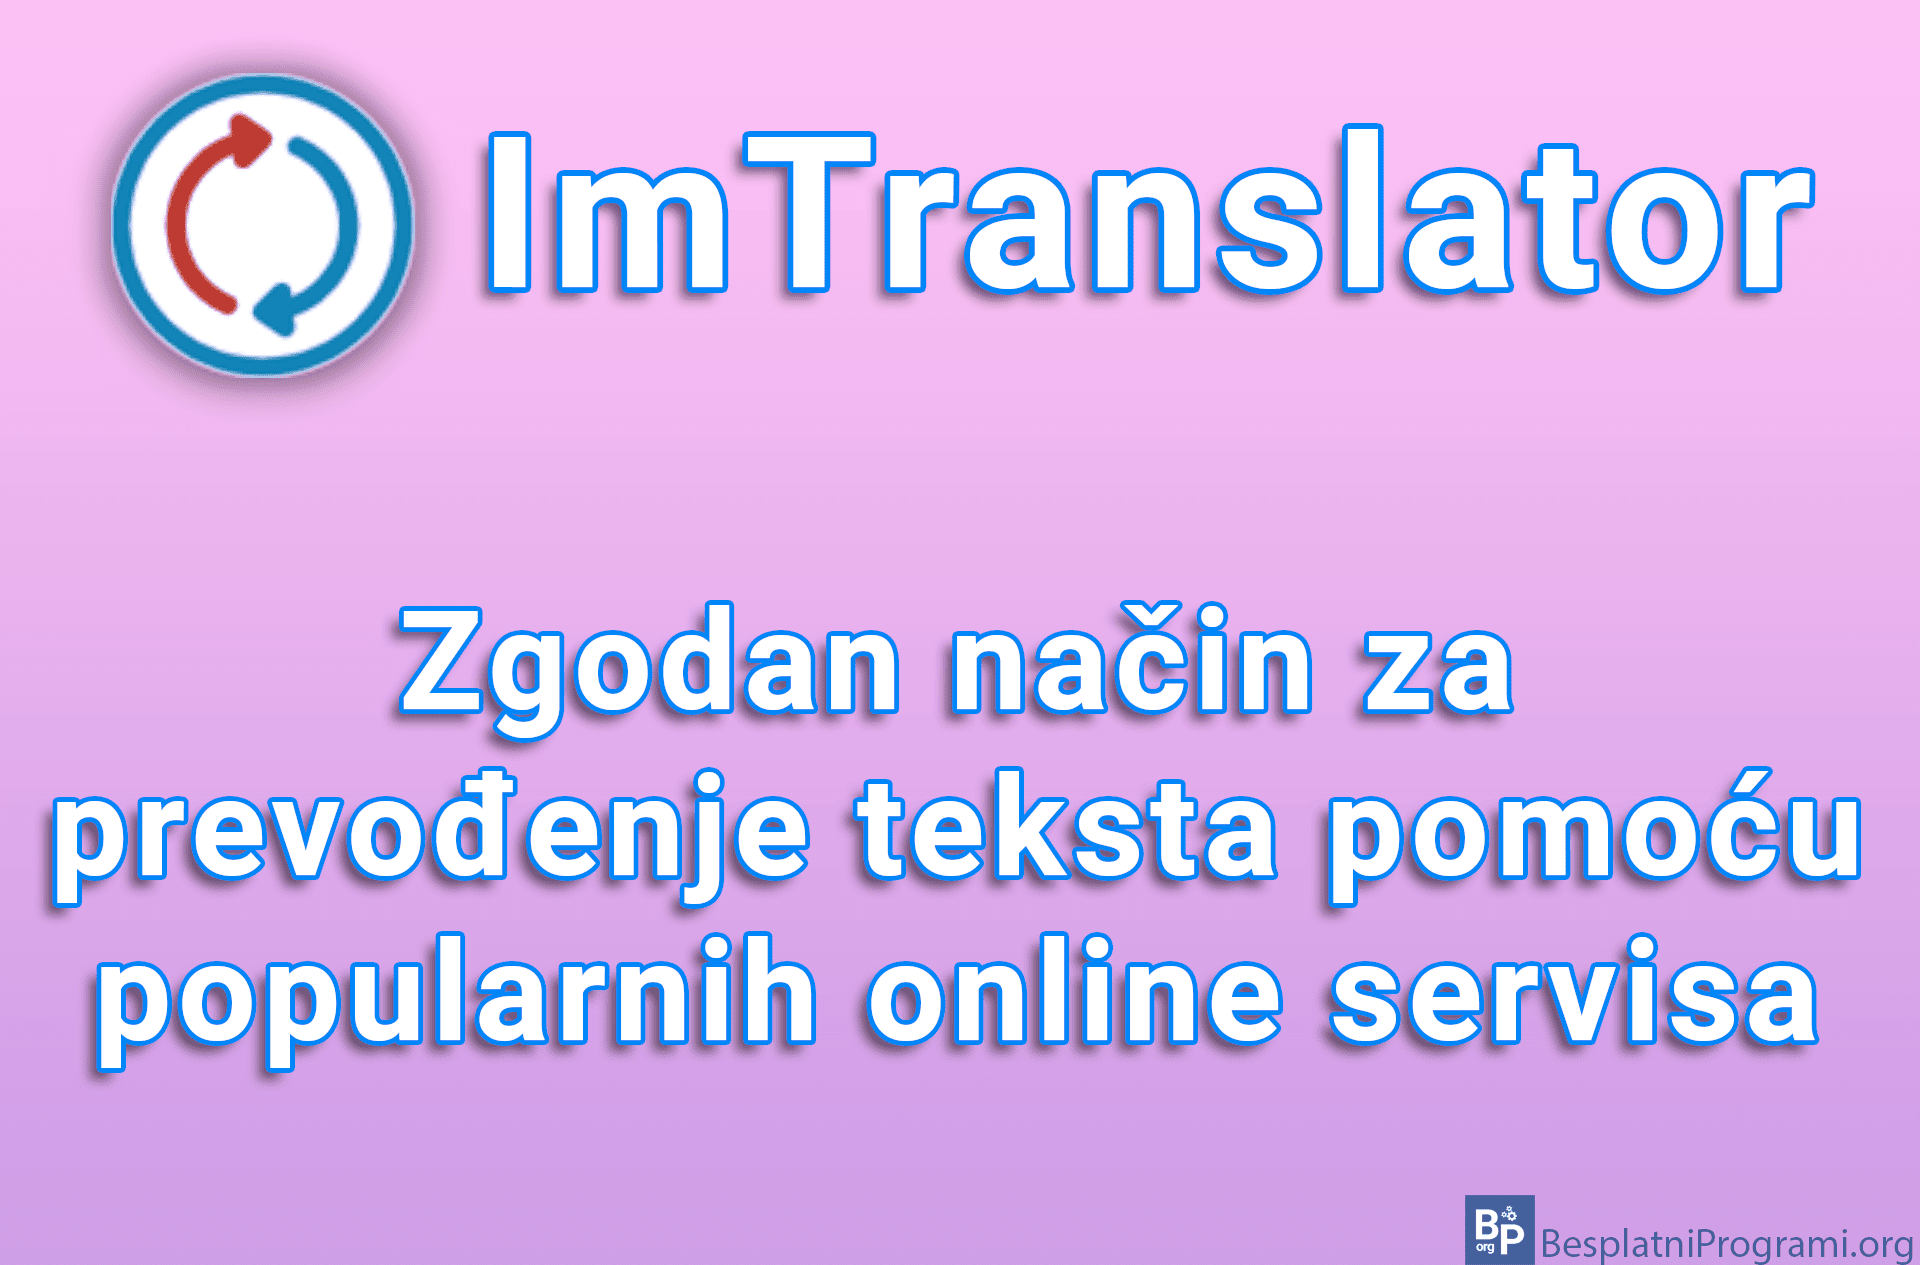 ImTranslator – Zgodan način za prevođenje teksta pomoću popularnih online servisa